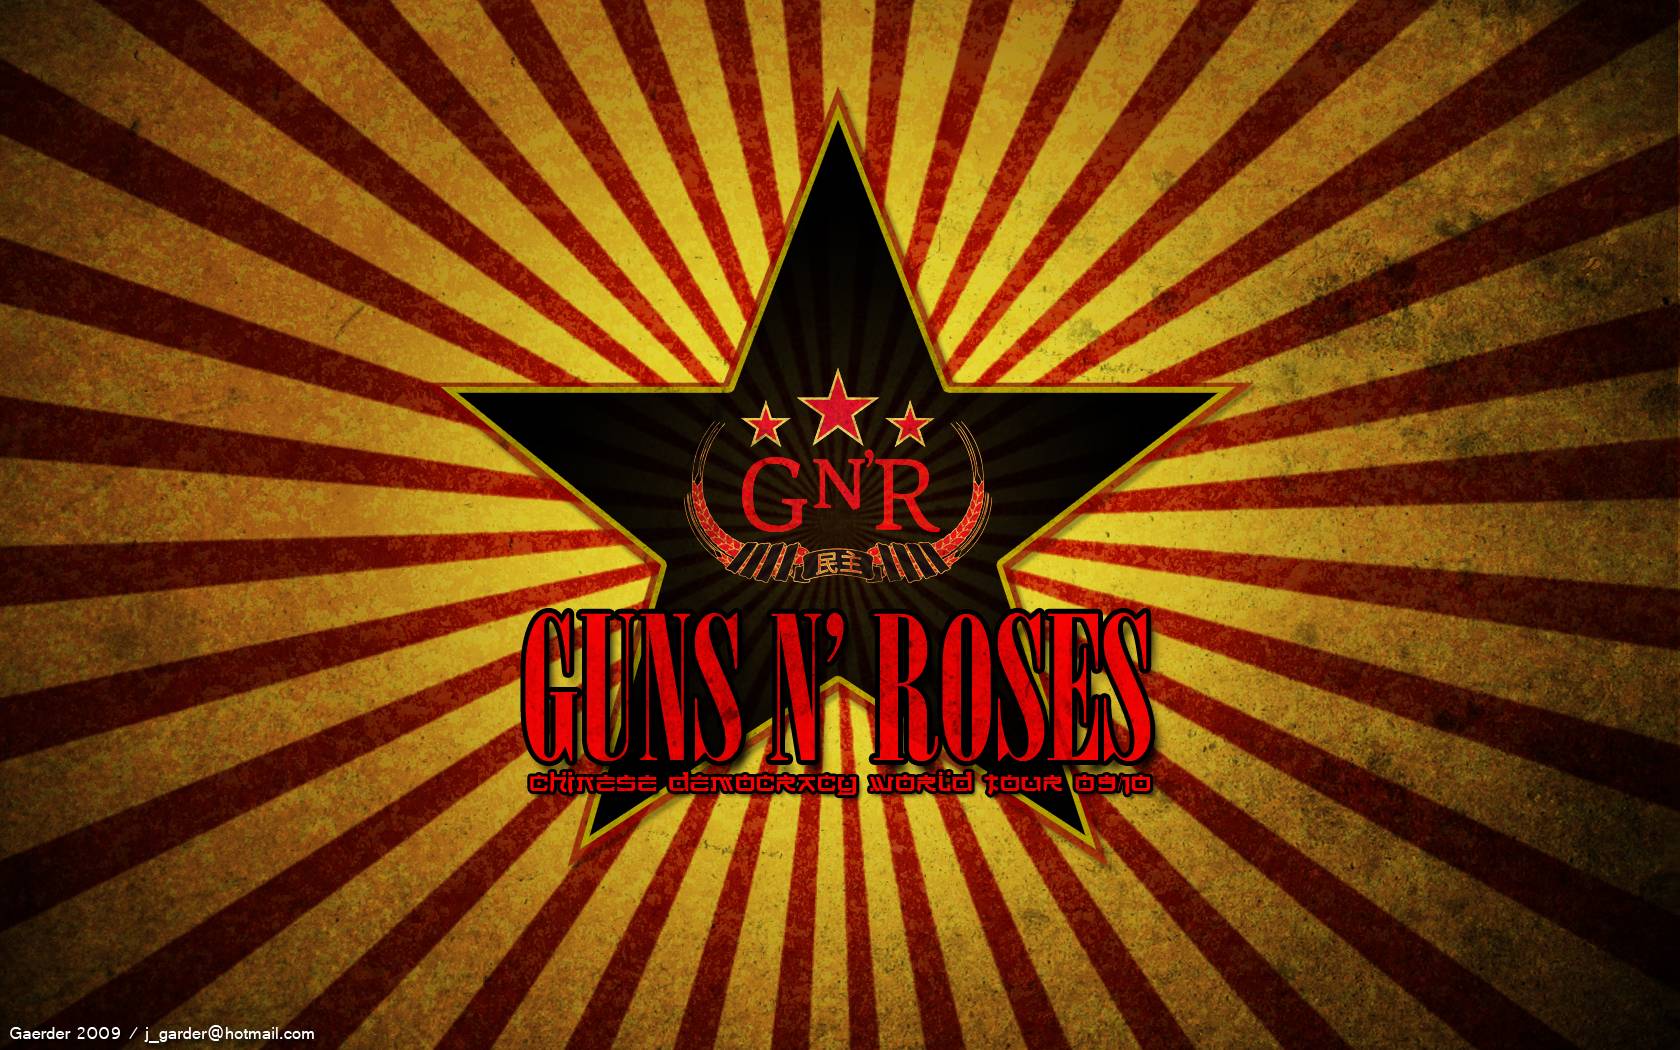 Guns N' Roses Logo Wallpapers - Wallpaper Cave